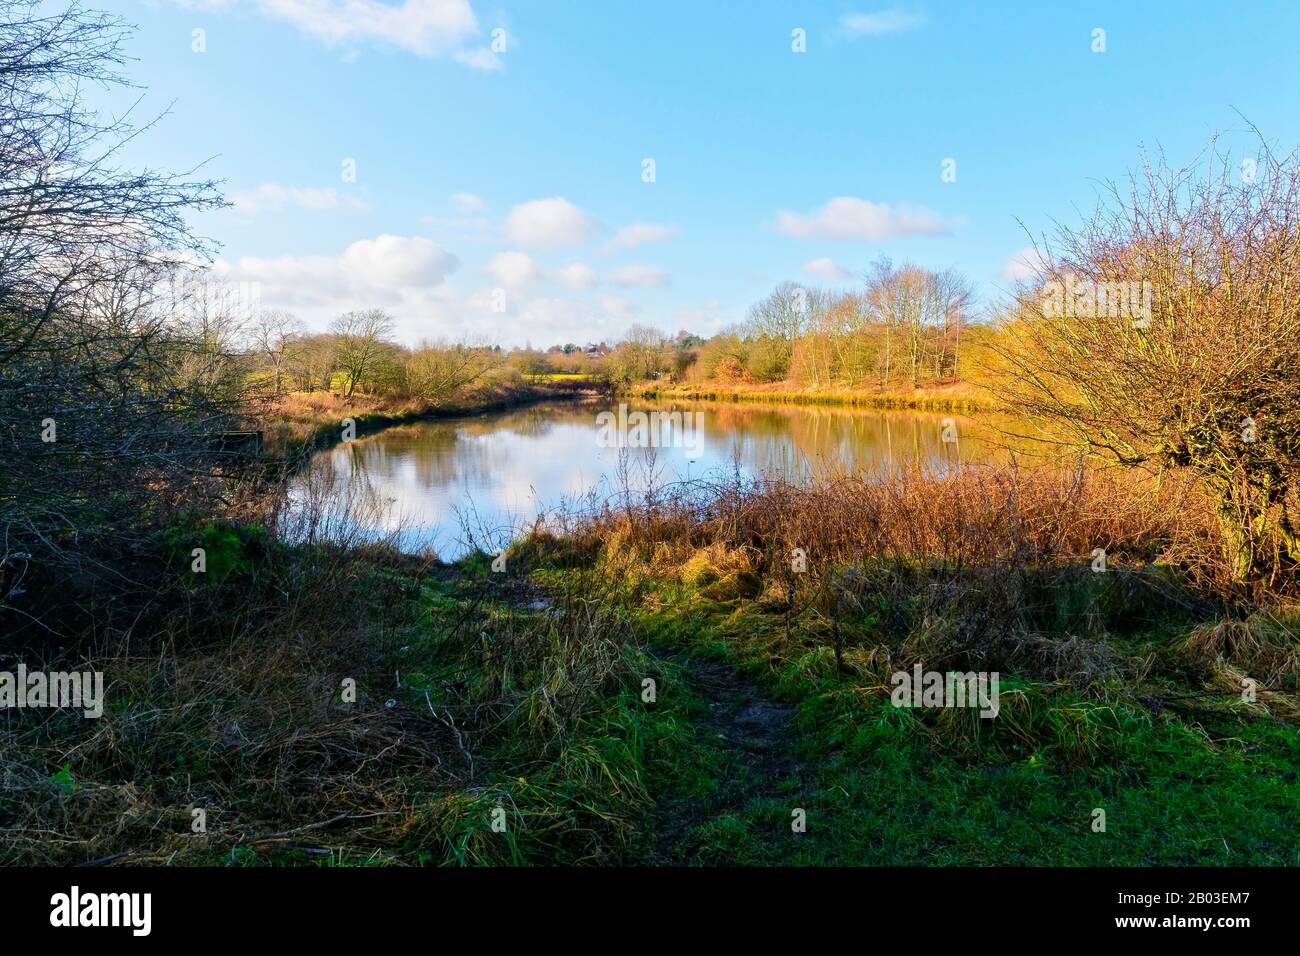 Un pequeño estanque en el campo, con bancos arbolados, refleja el cielo azul del invierno Foto de stock